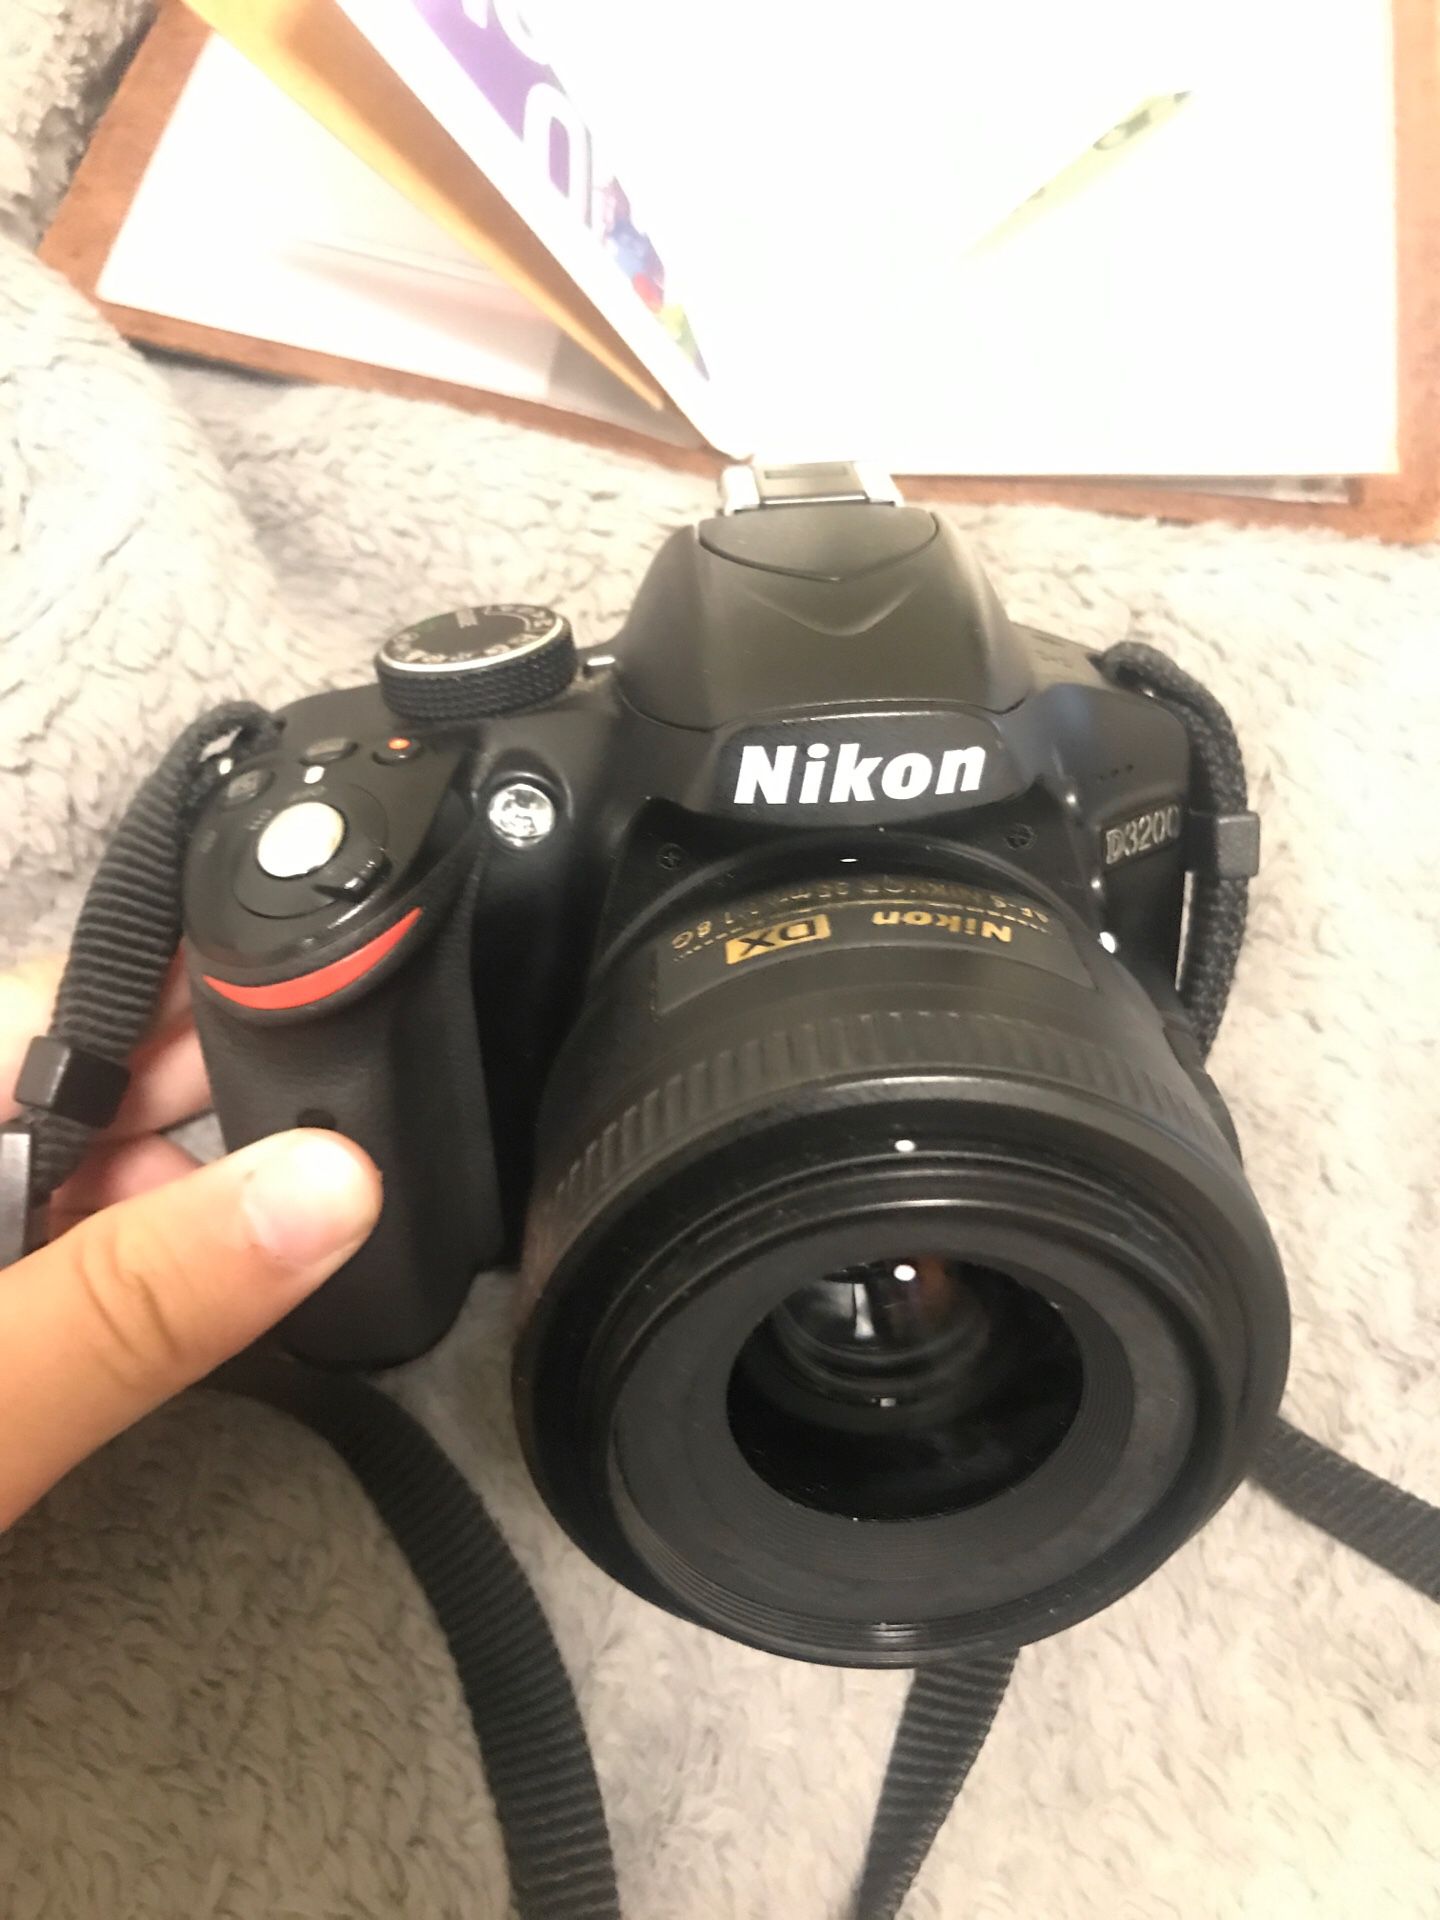 Nikon d3200 + 35mm f1.8 prime lens